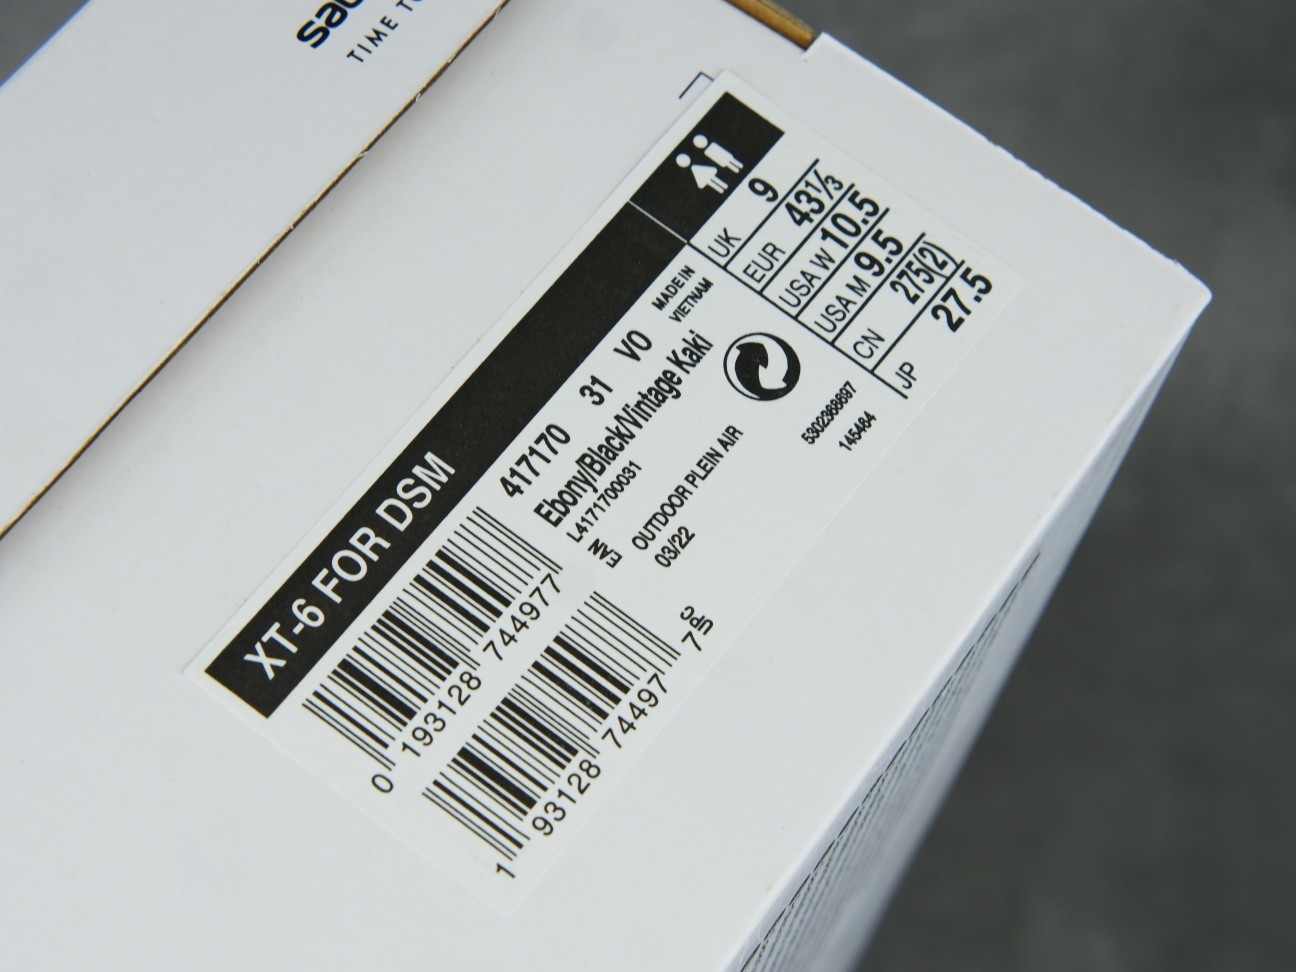 萨洛蒙XT-6Size:36-46纯原出品-SalomonXT-6ADVForDSM潮流越野户外功能鞋黑